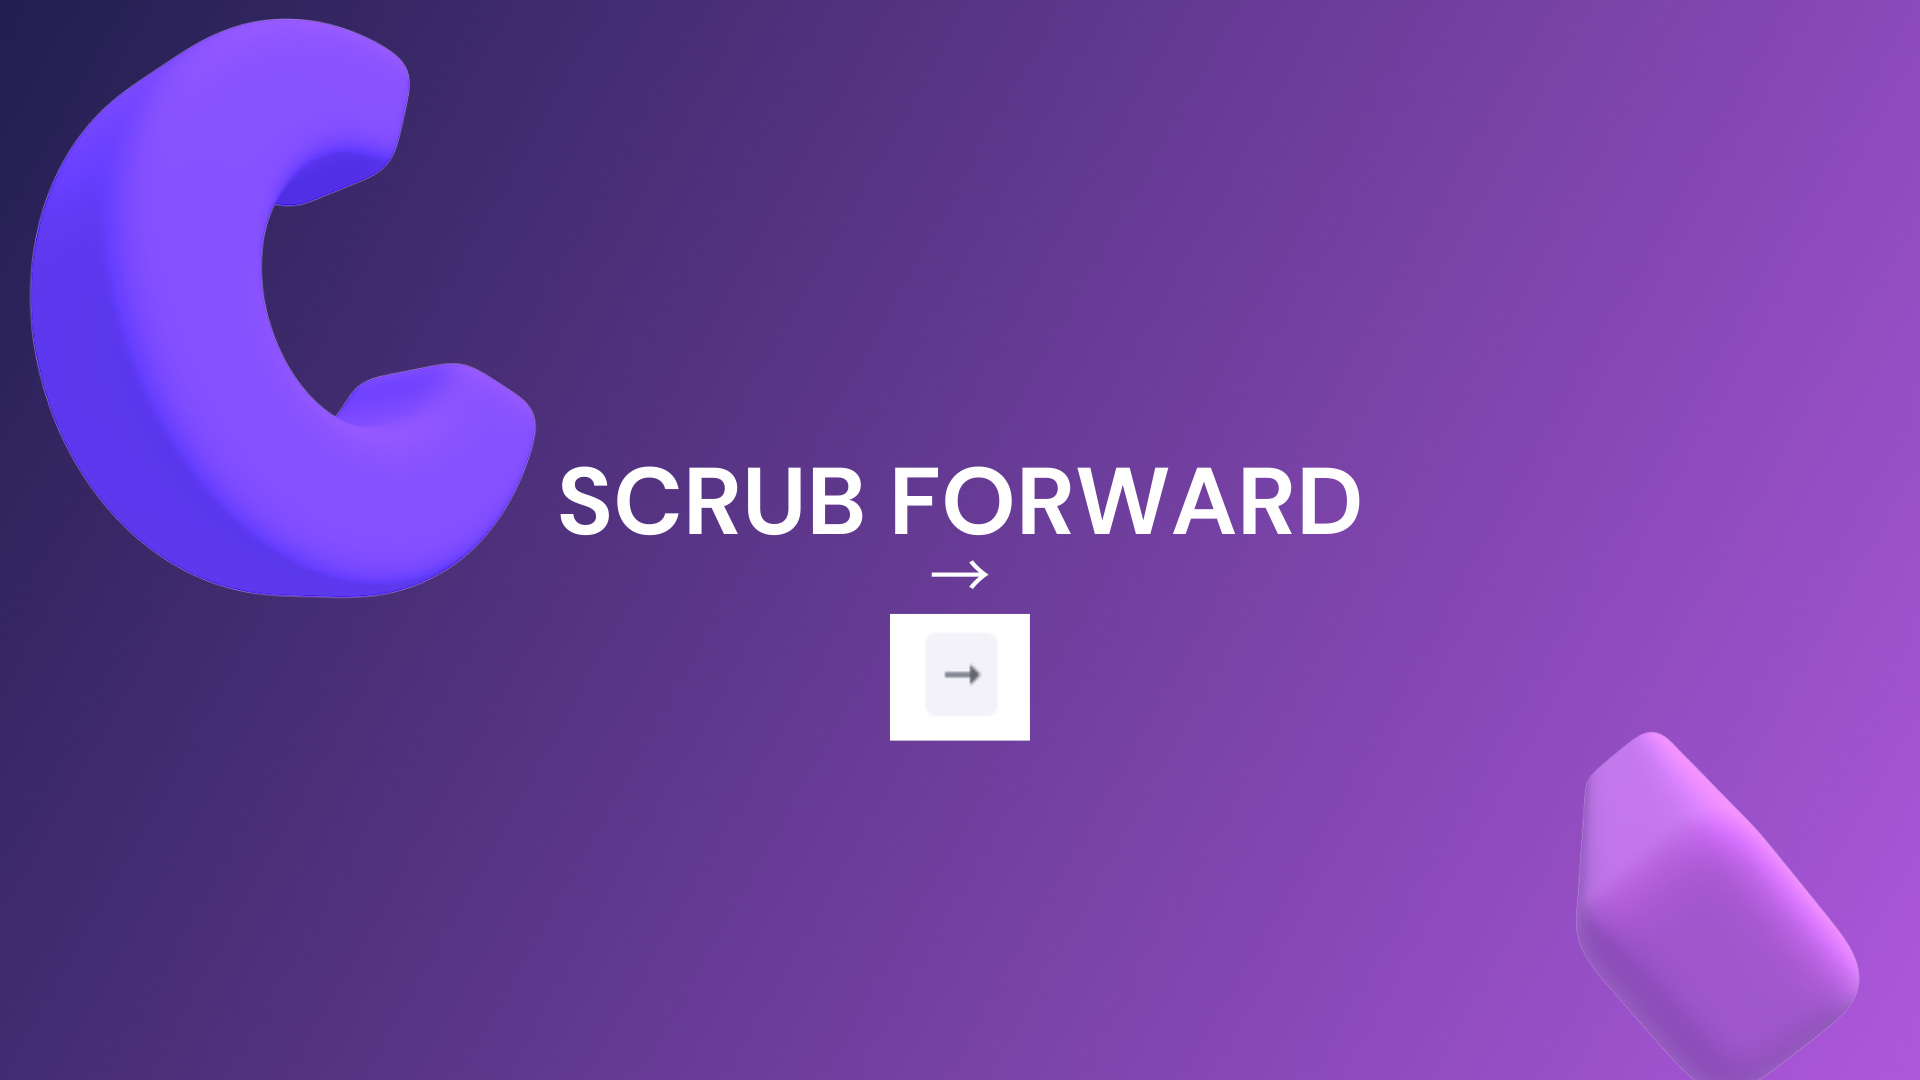 Scrub forward